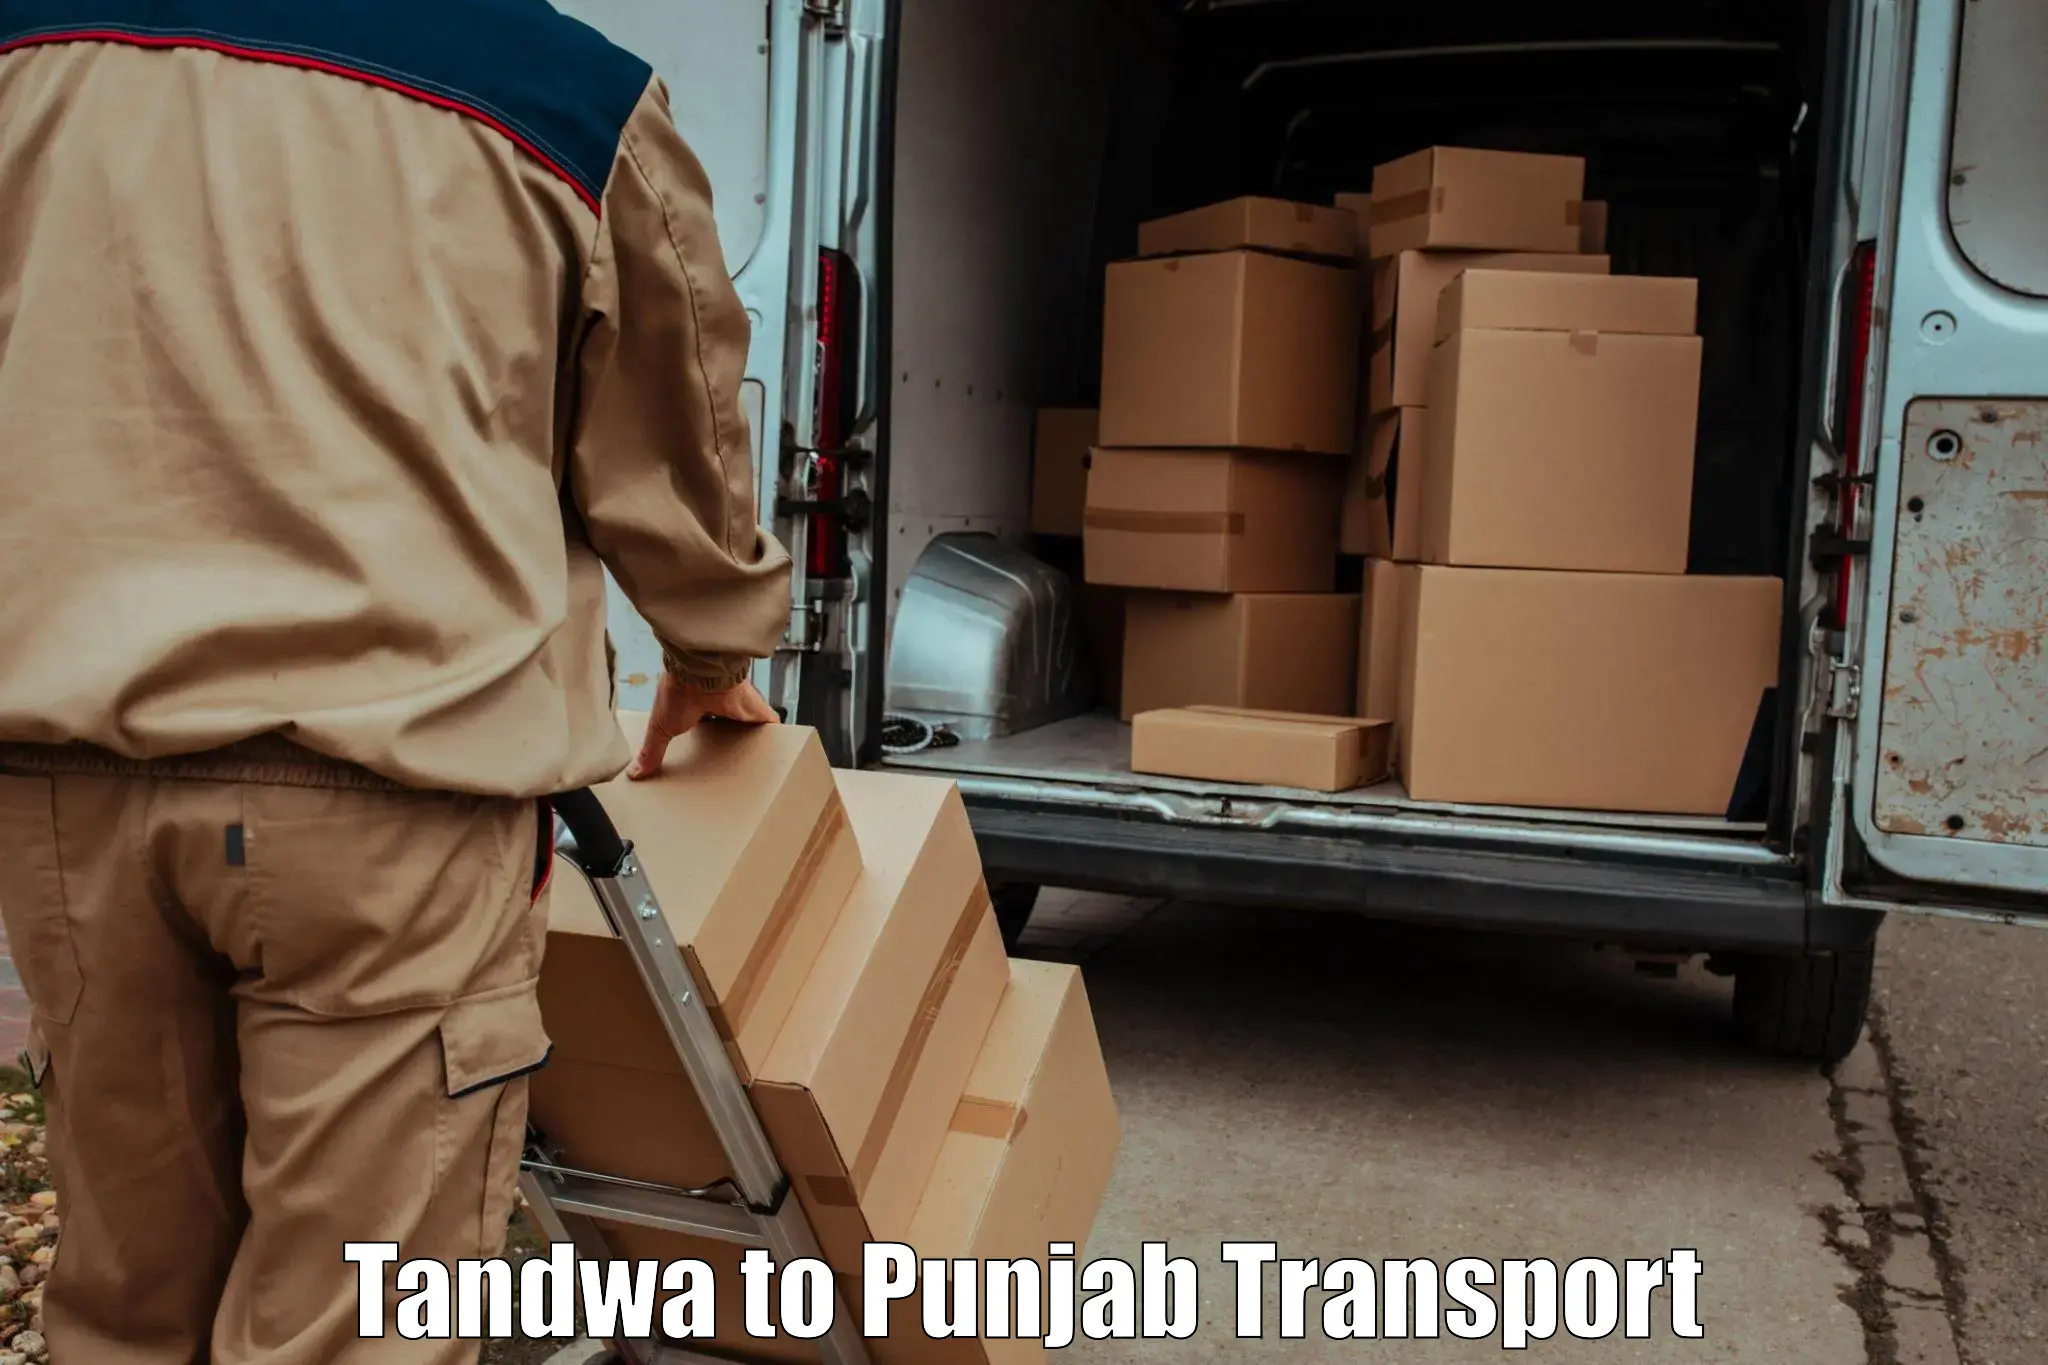 Nearest transport service Tandwa to Mandi Gobindgarh